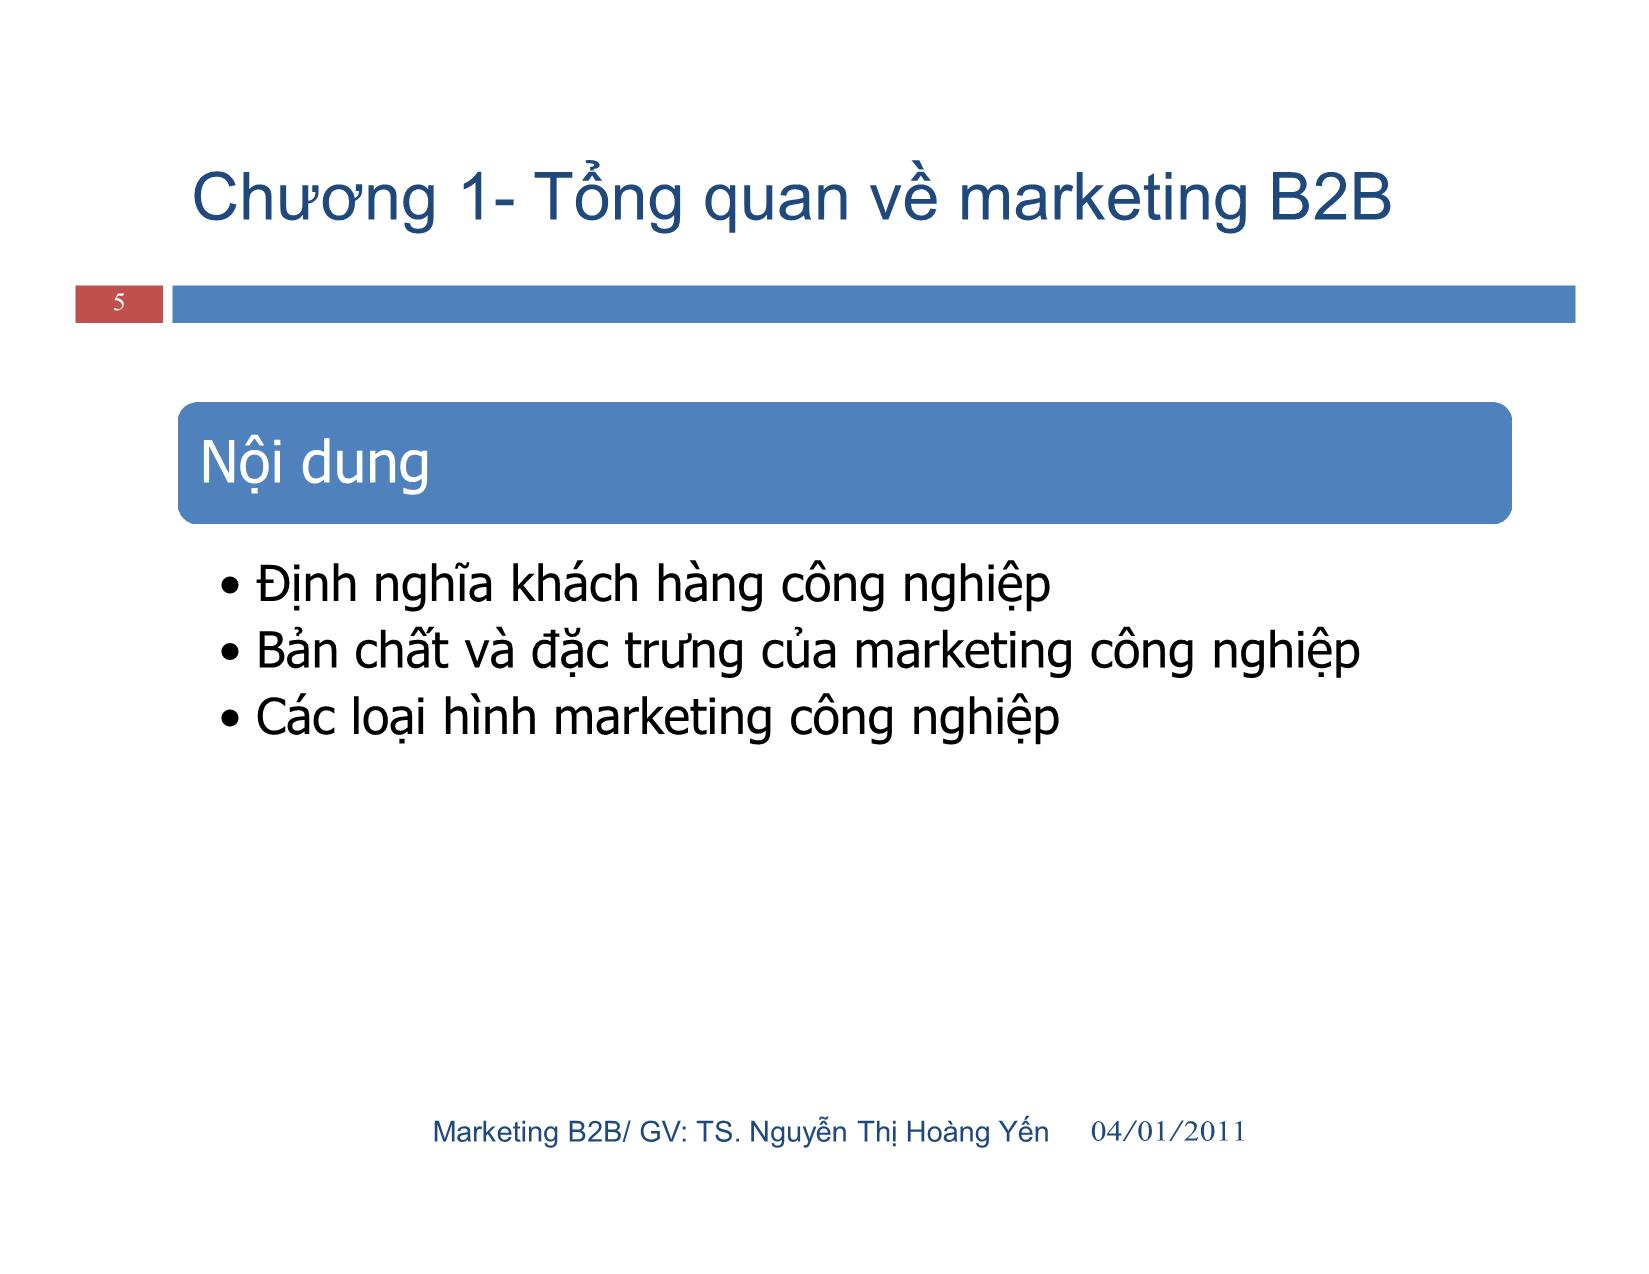 Giáo trình Marketing công nghiệp (marketing b2b) trang 5